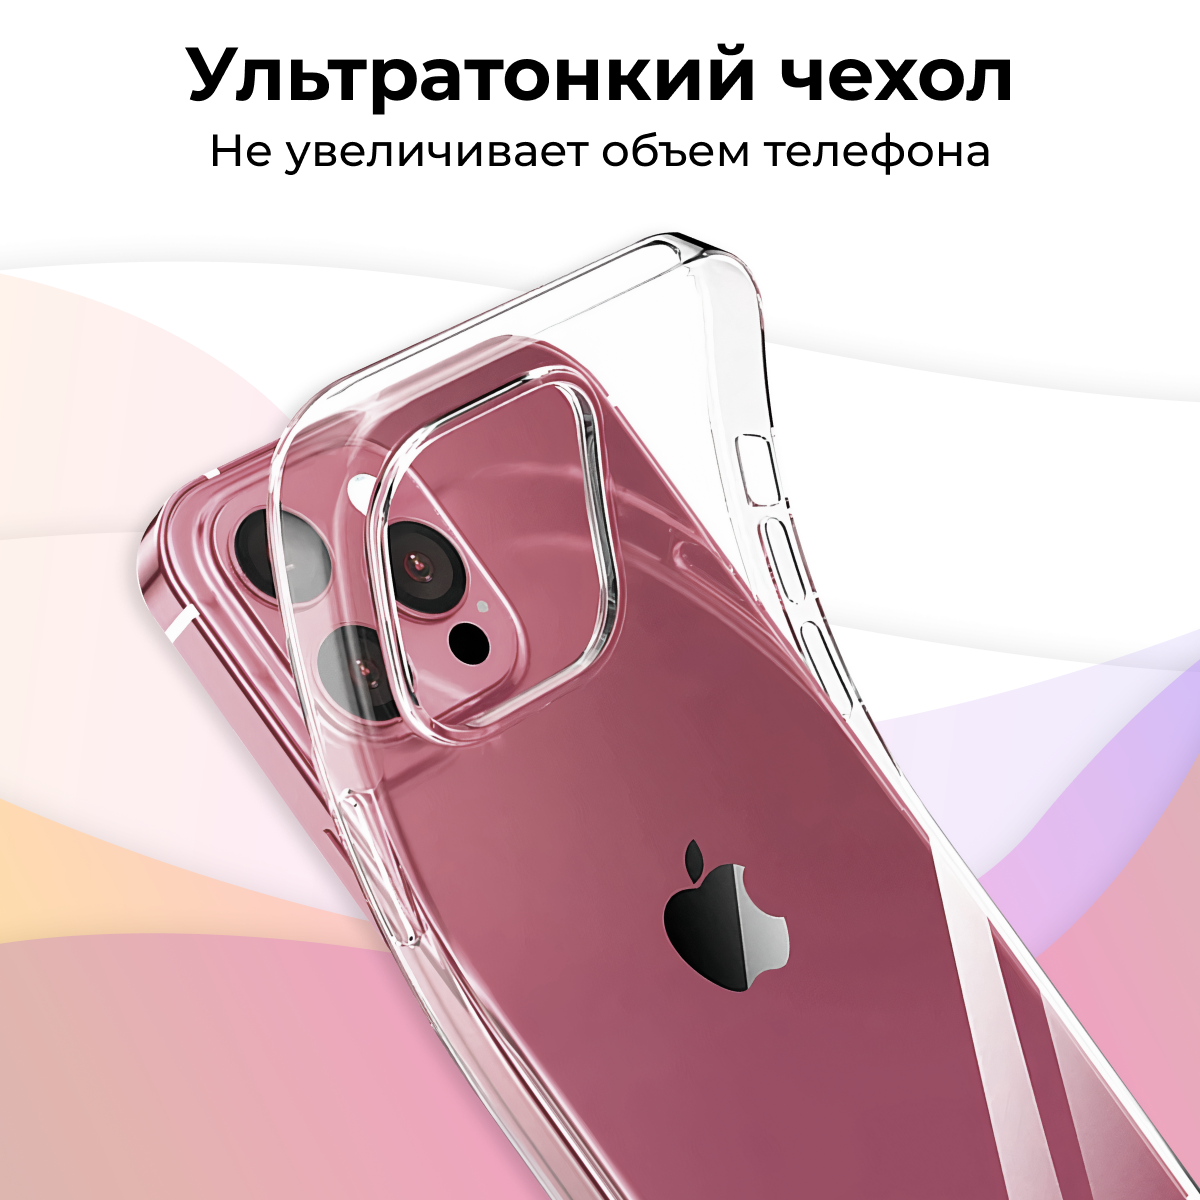 Ультратонкий силиконовый чехол для телефона Xiaomi Redmi 9 / Сяоми Редми 9 с дополнительной защитой камеры (Прозрачный)